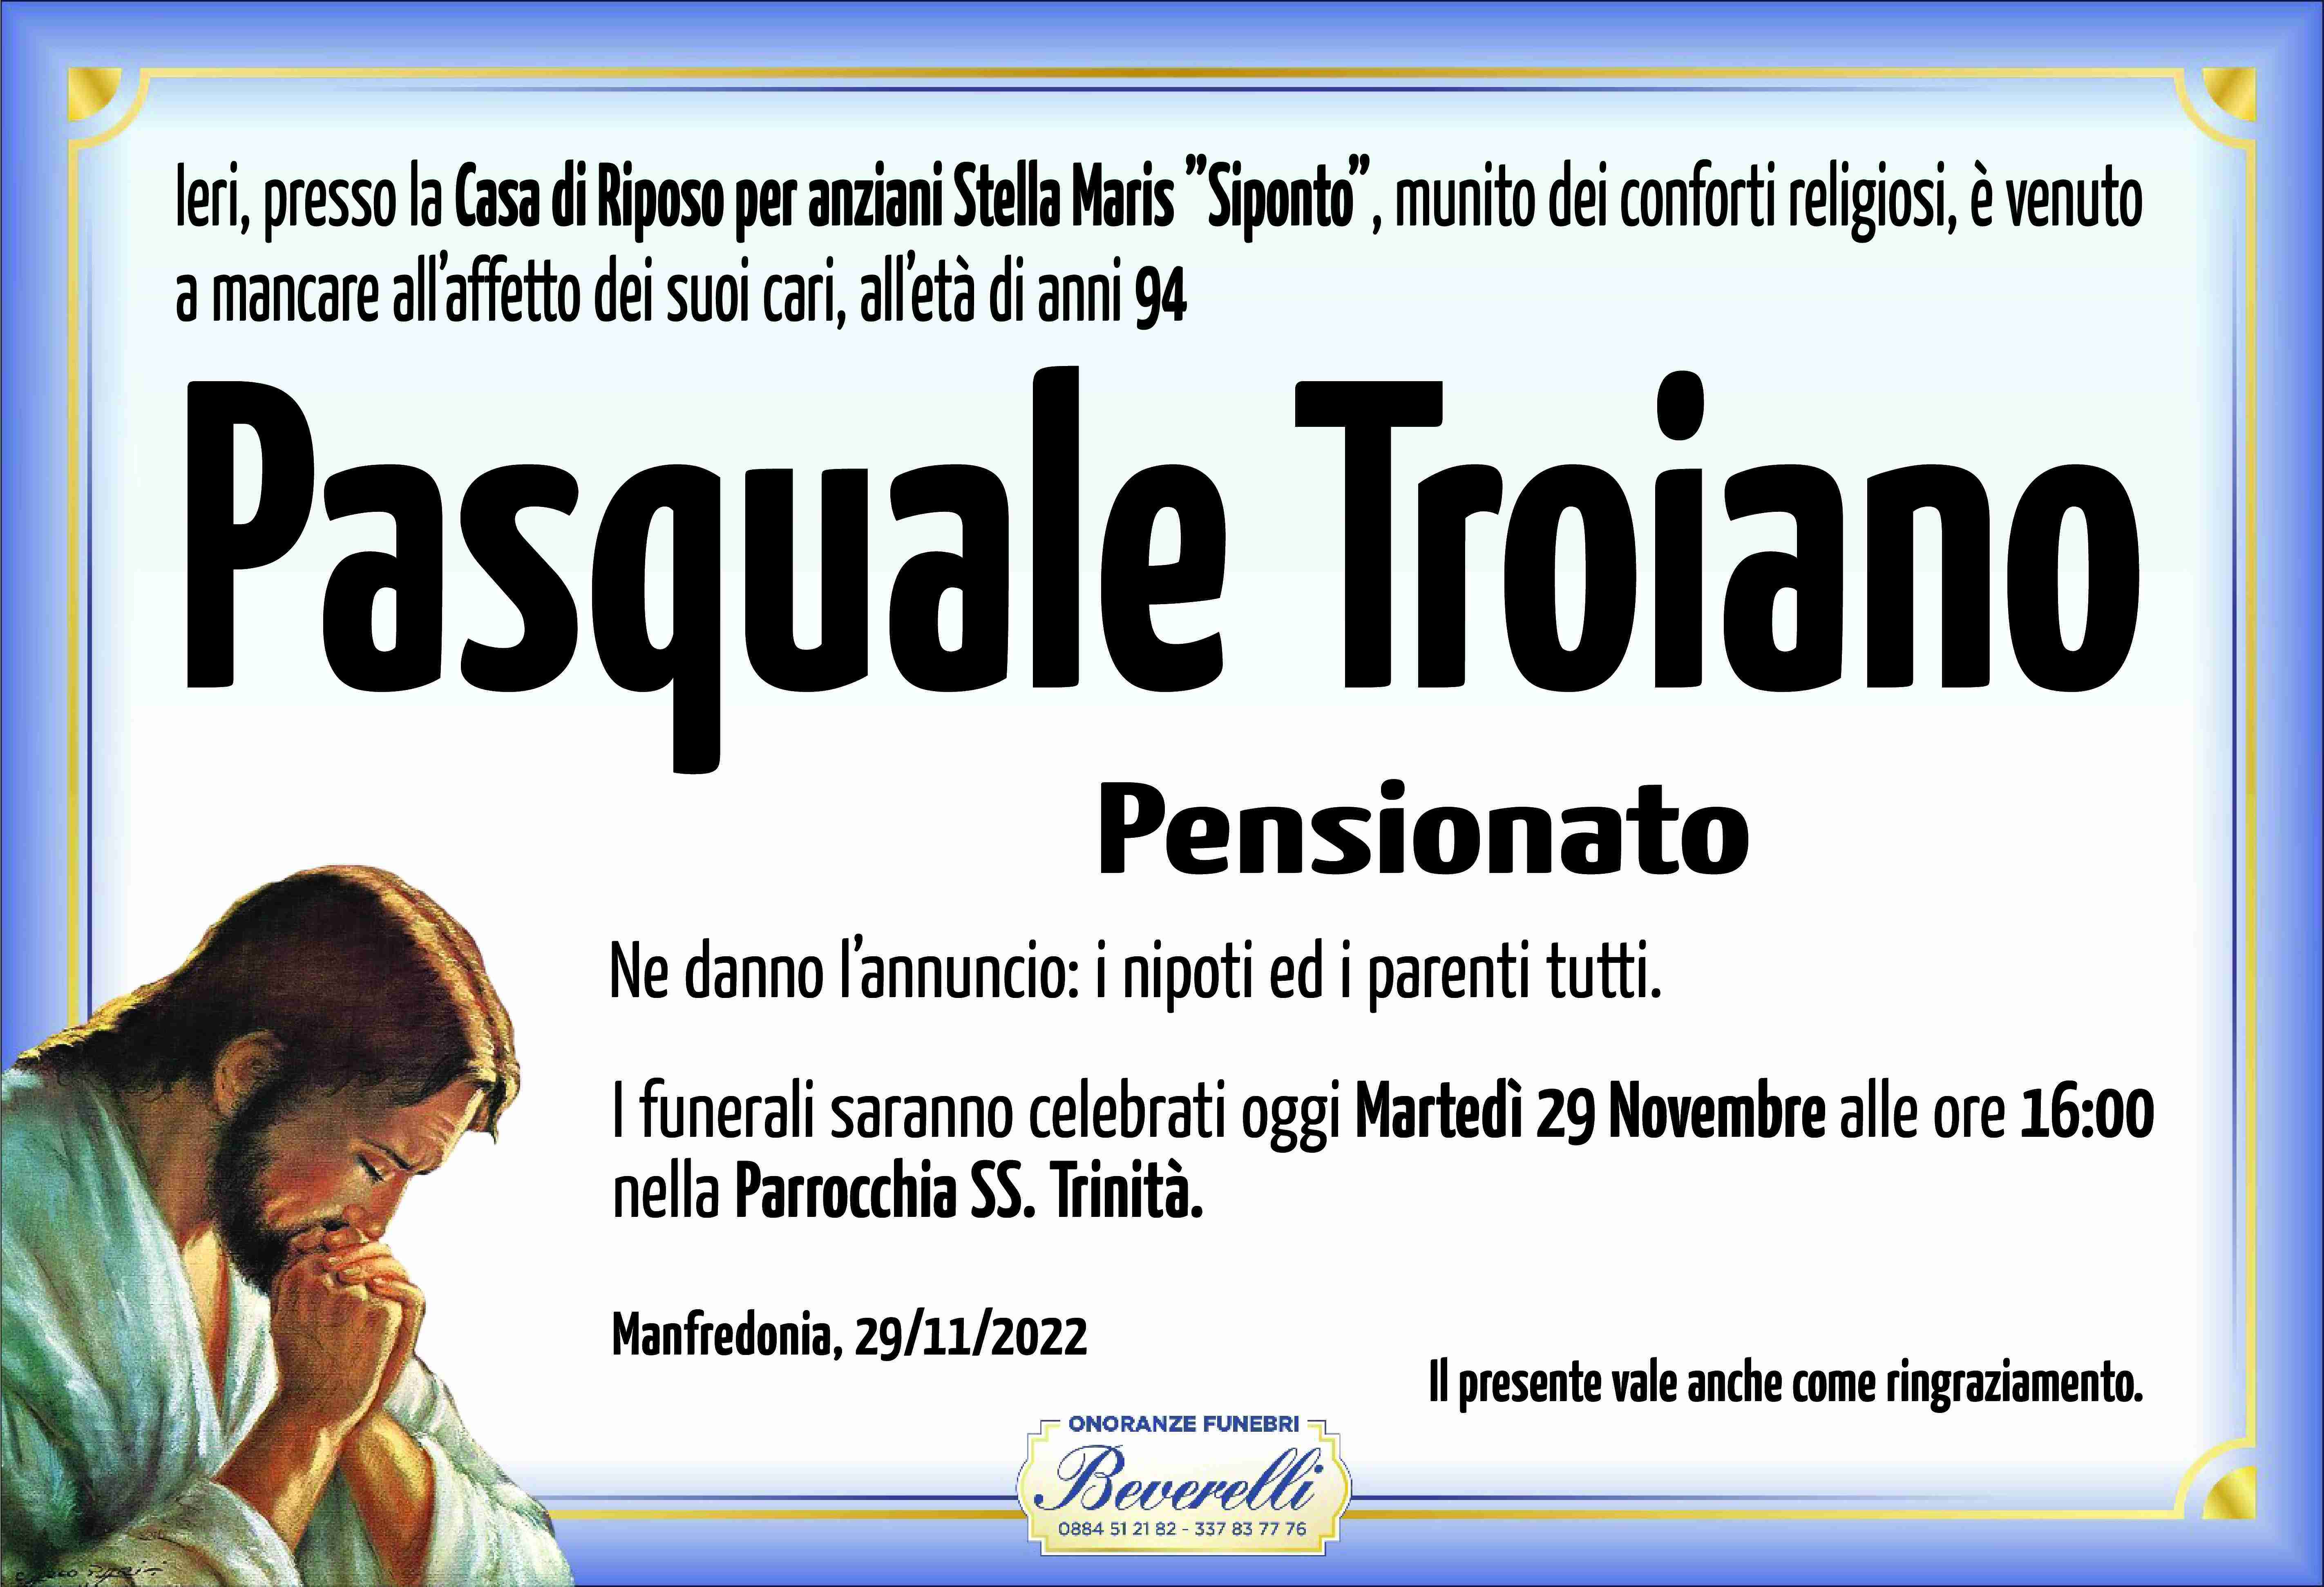 Pasquale Troiano